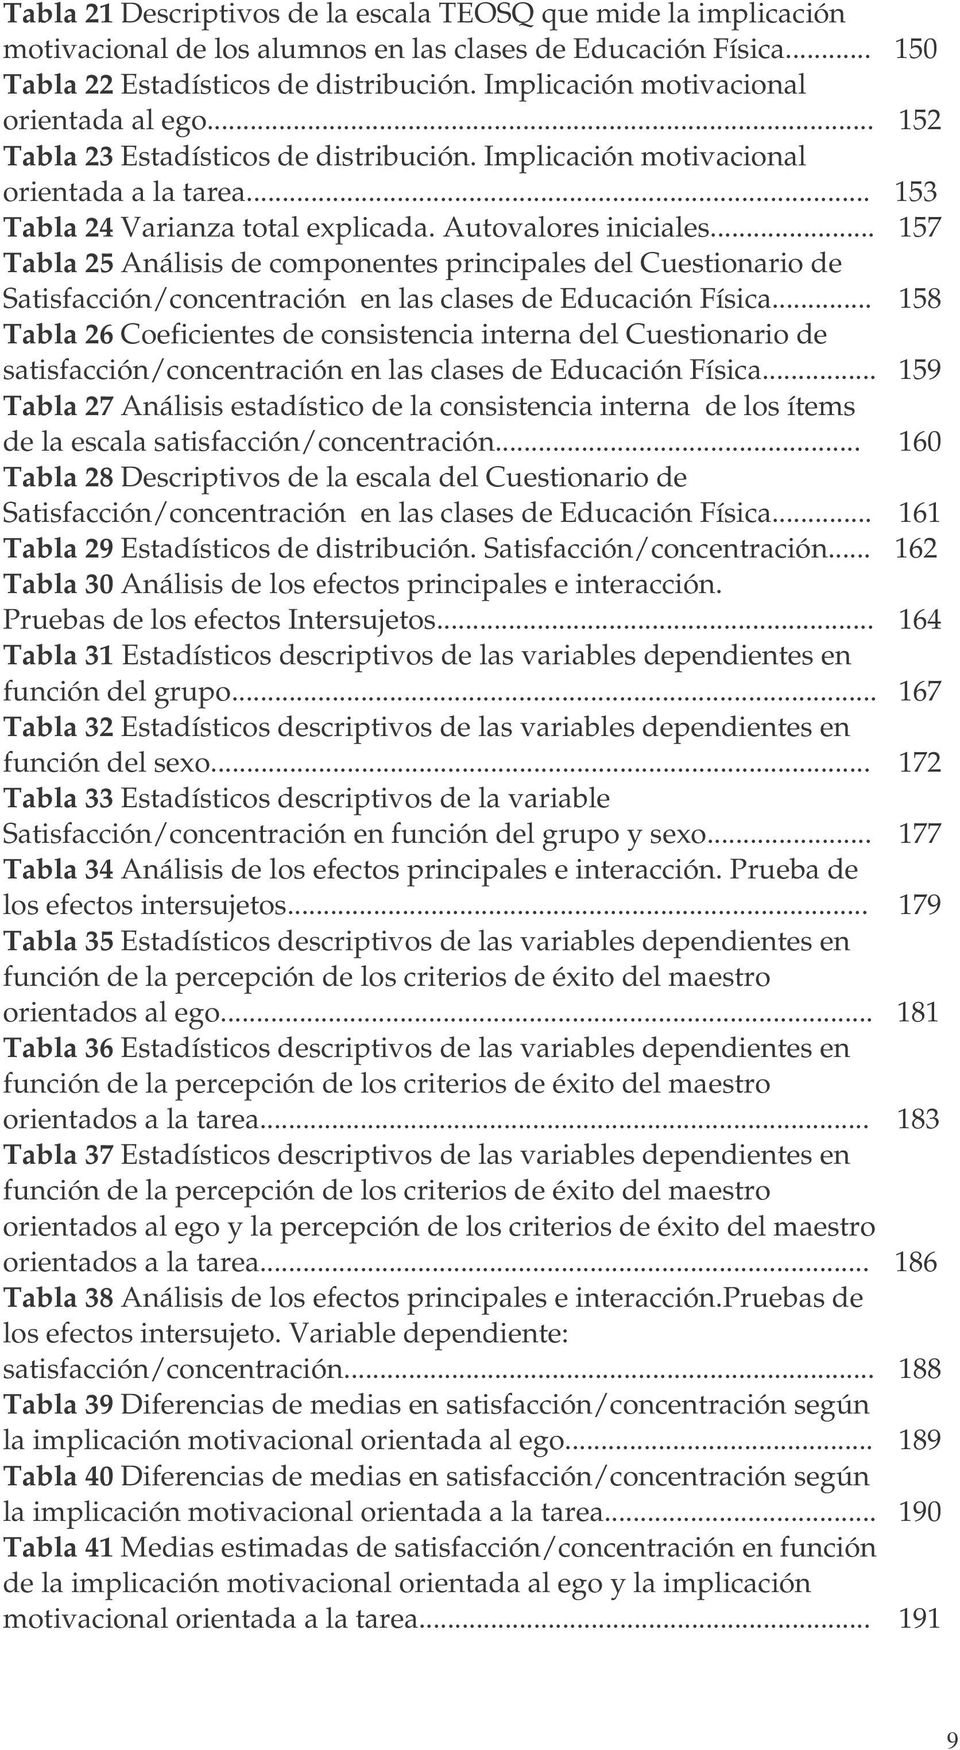 .. Tabla 25 Análisis de componentes principales del Cuestionario de Satisfacción/concentración en las clases de Educación Física.